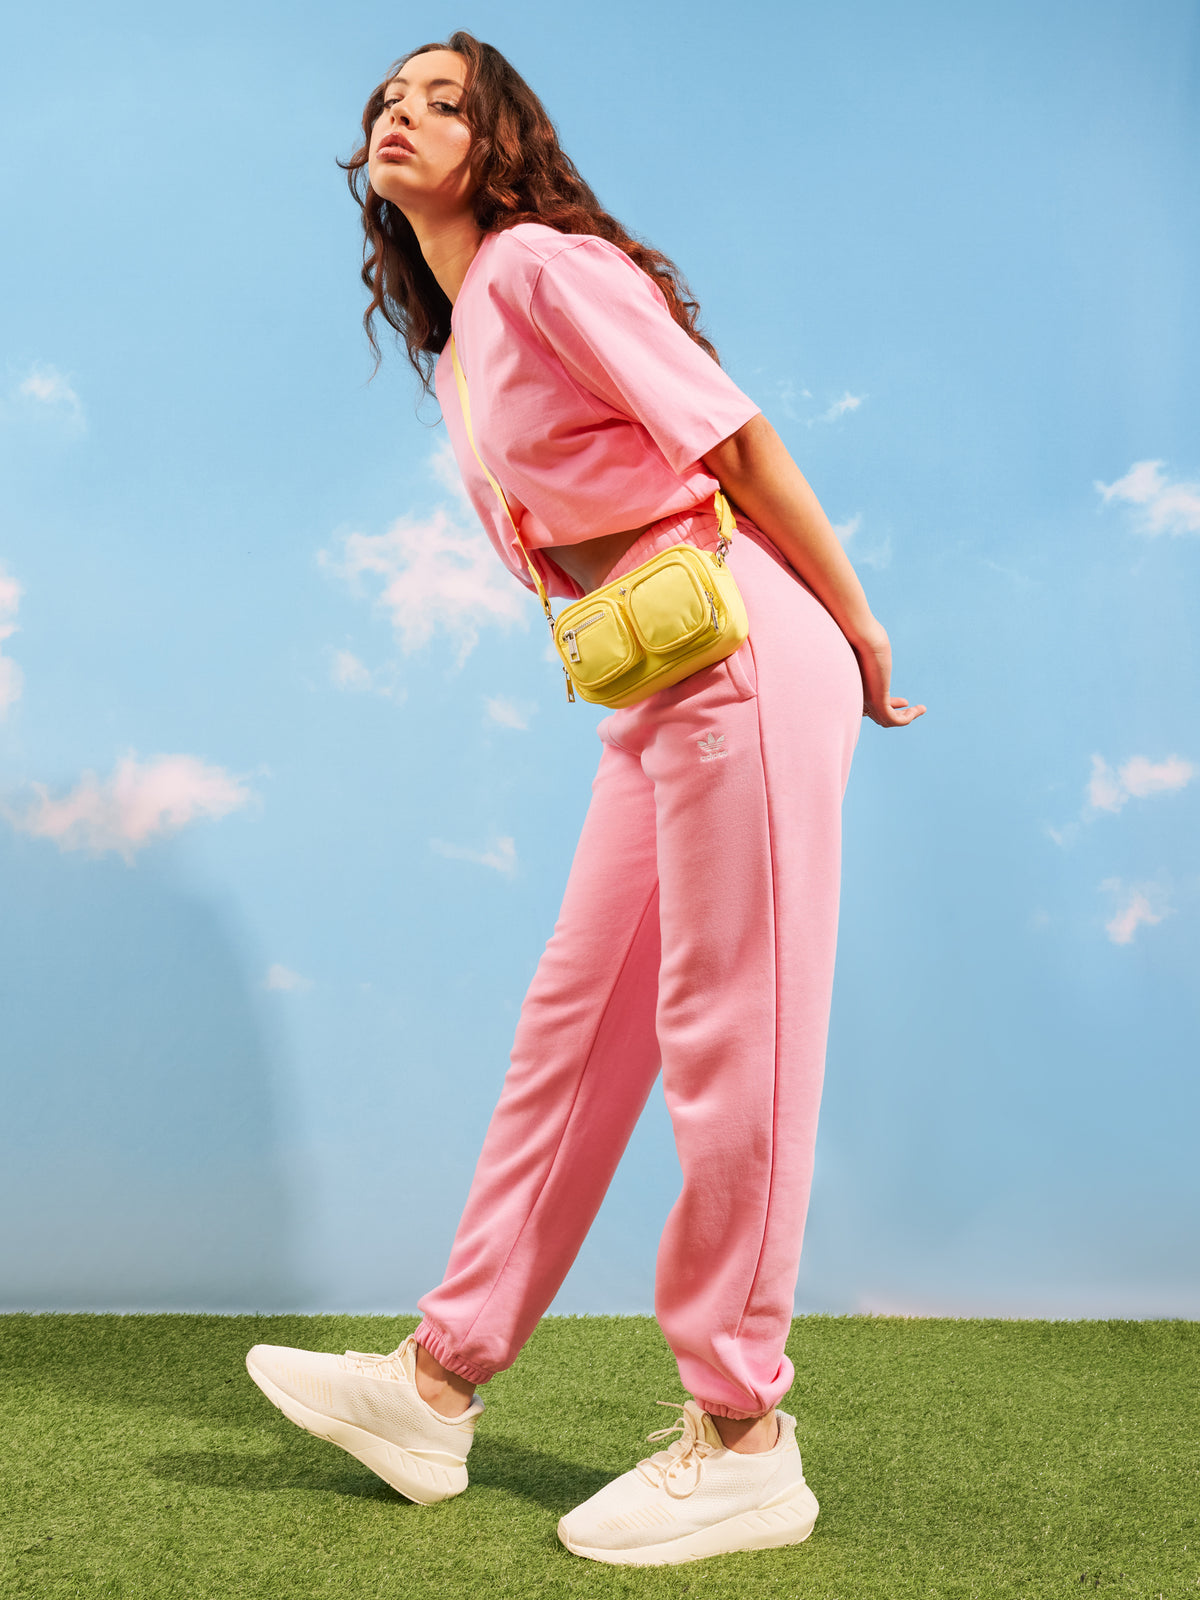 Adicolor Essentials Fleece Joggers in Bliss Pink